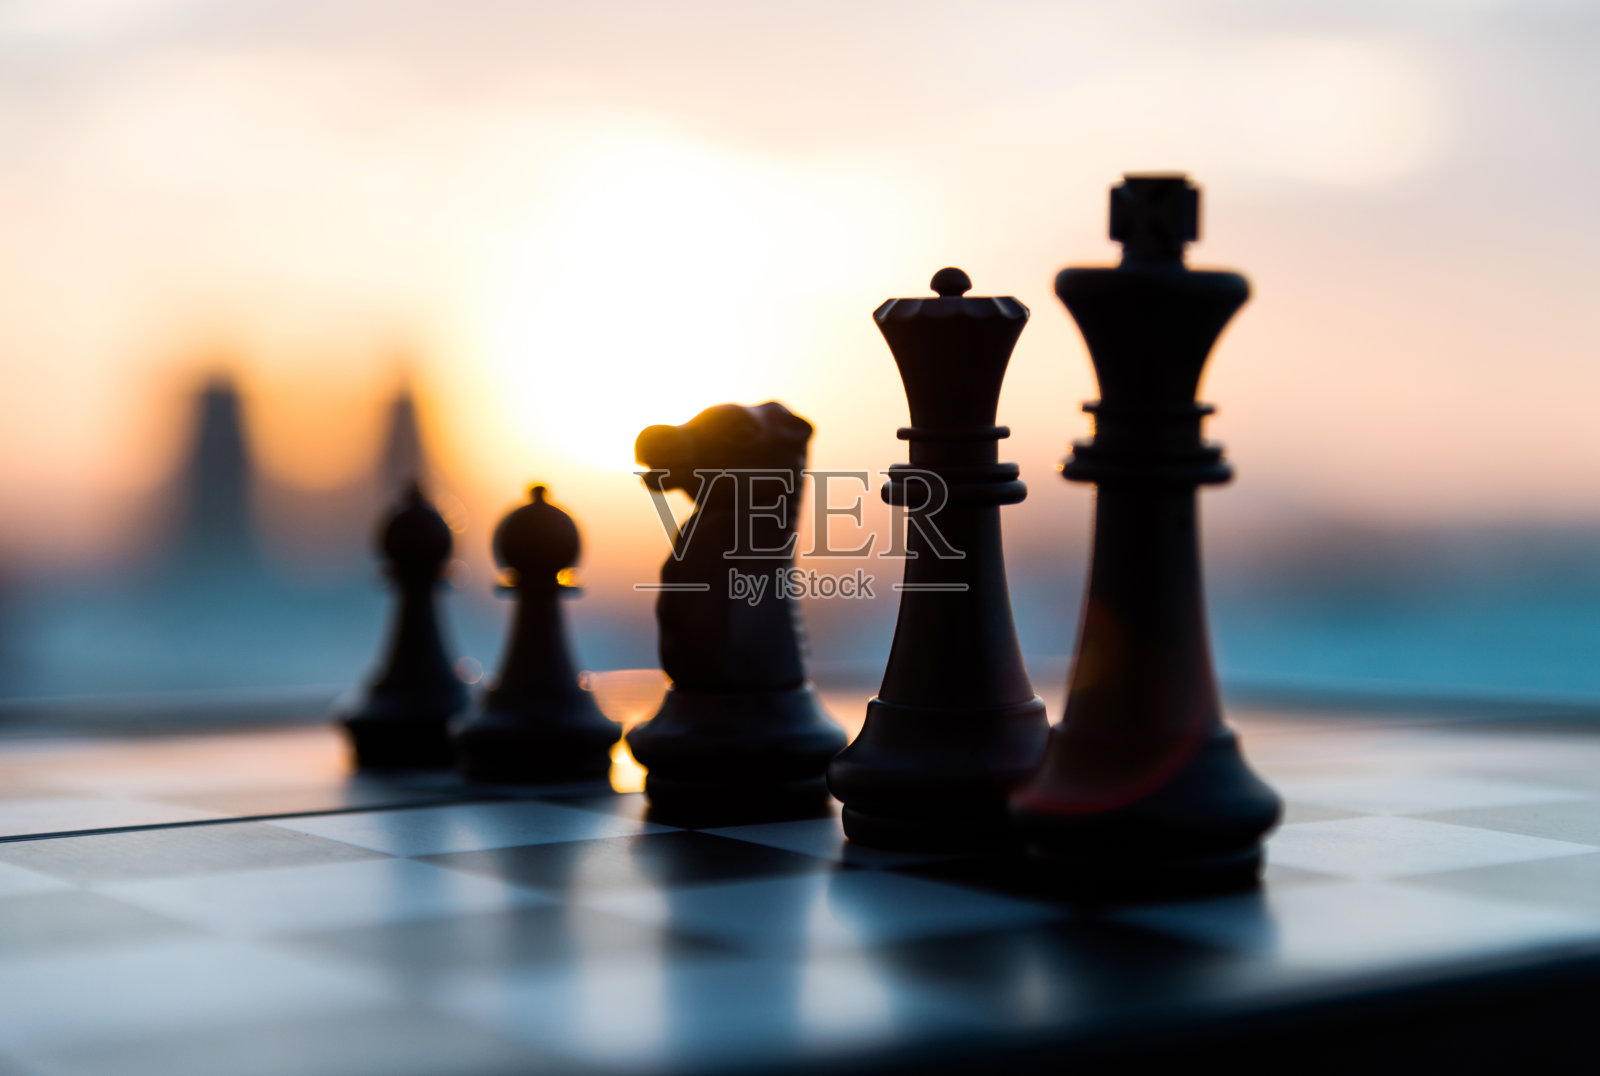 国际象棋的游戏照片摄影图片